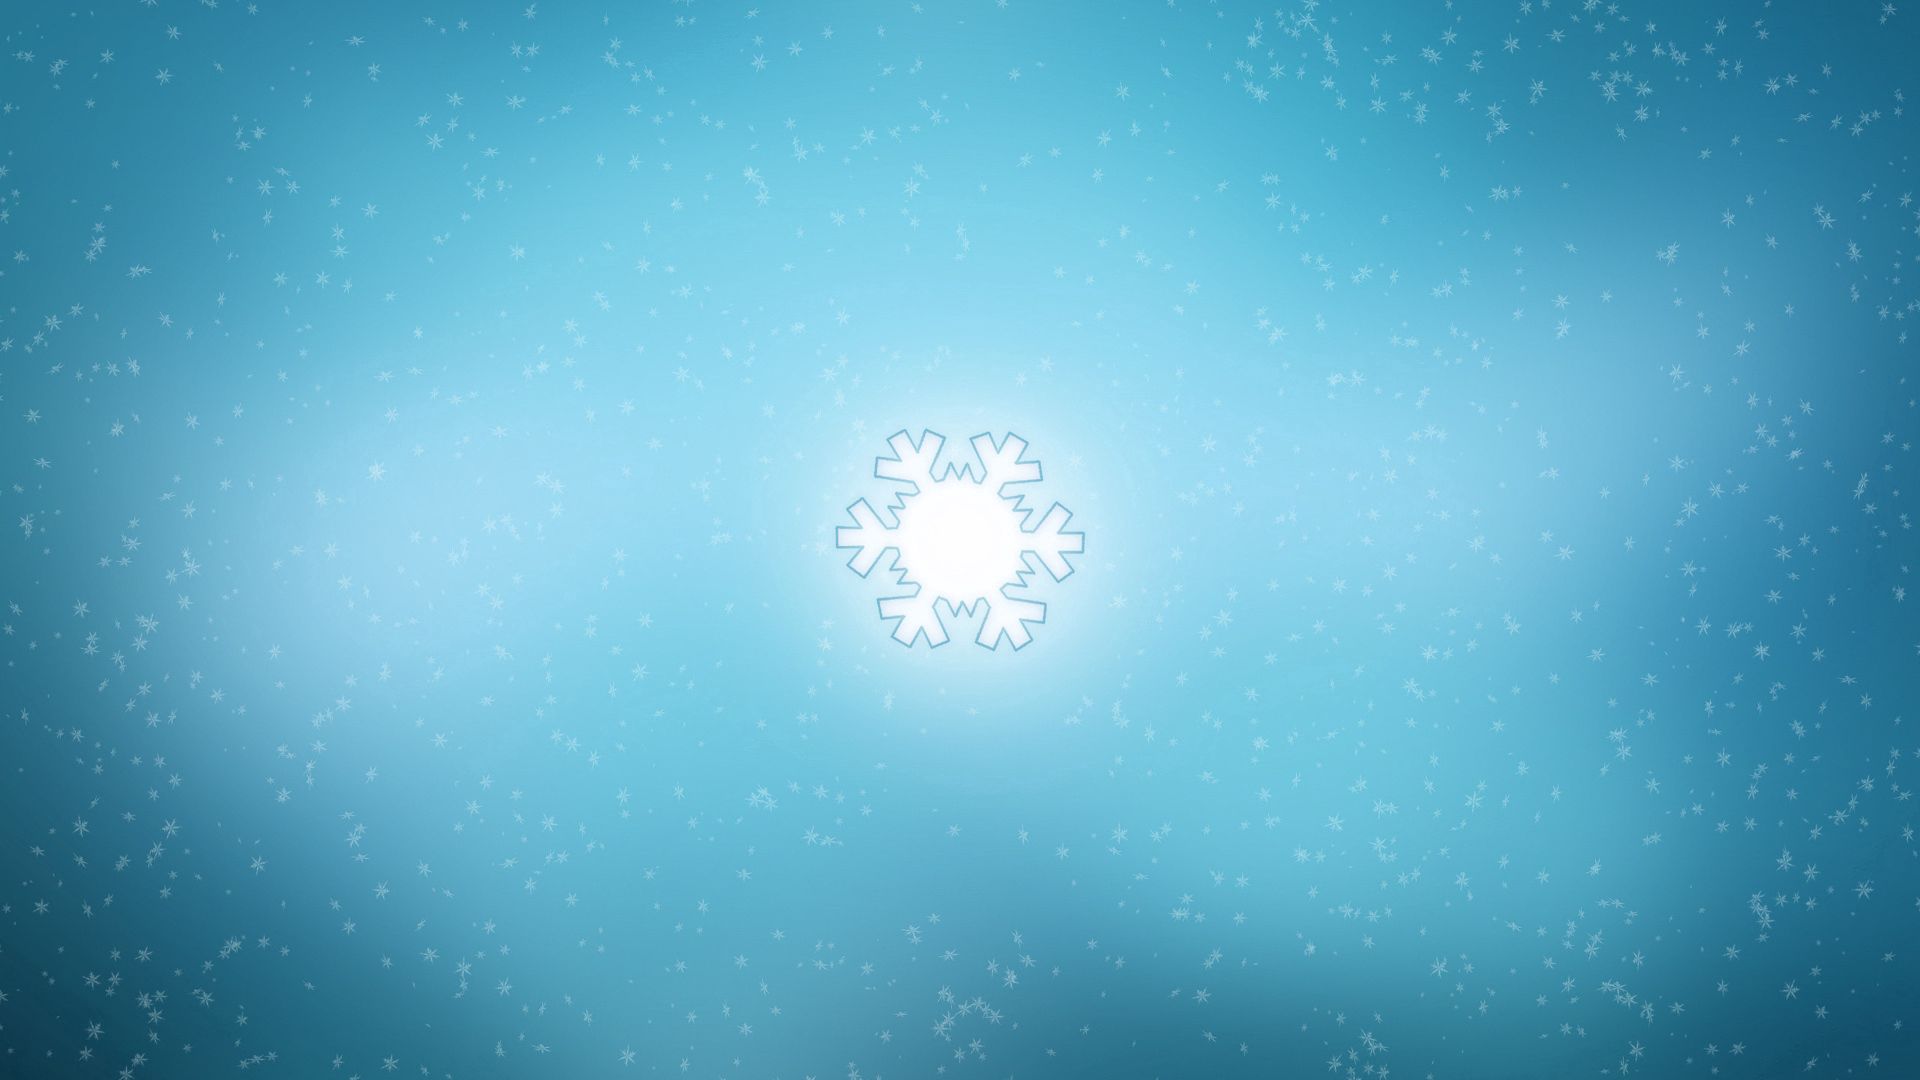 Snowflake Lock Screen Mobile